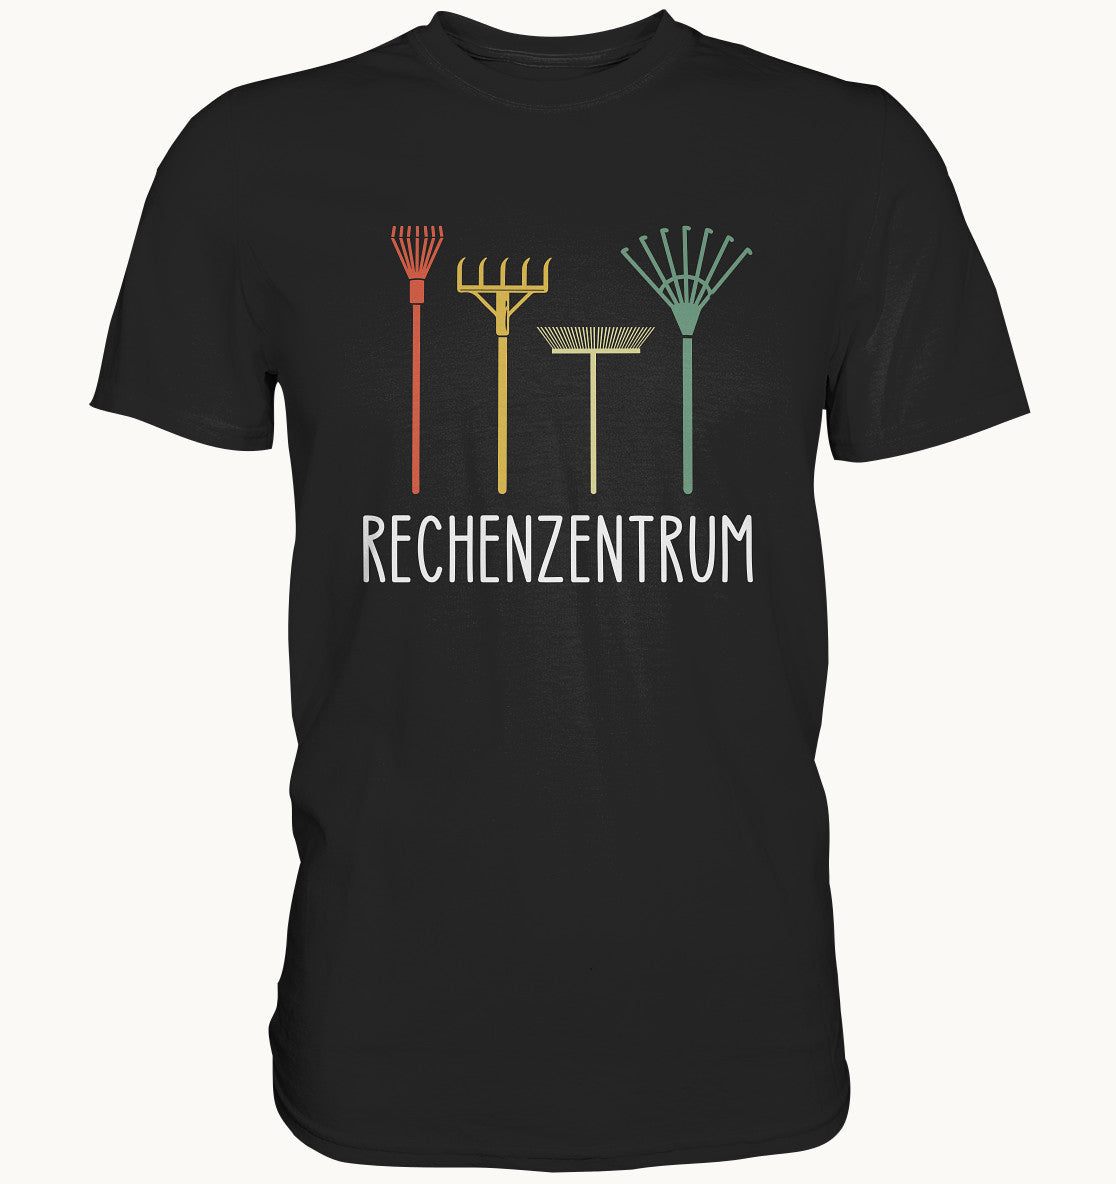 Rechenzentrum - Premium Shirt